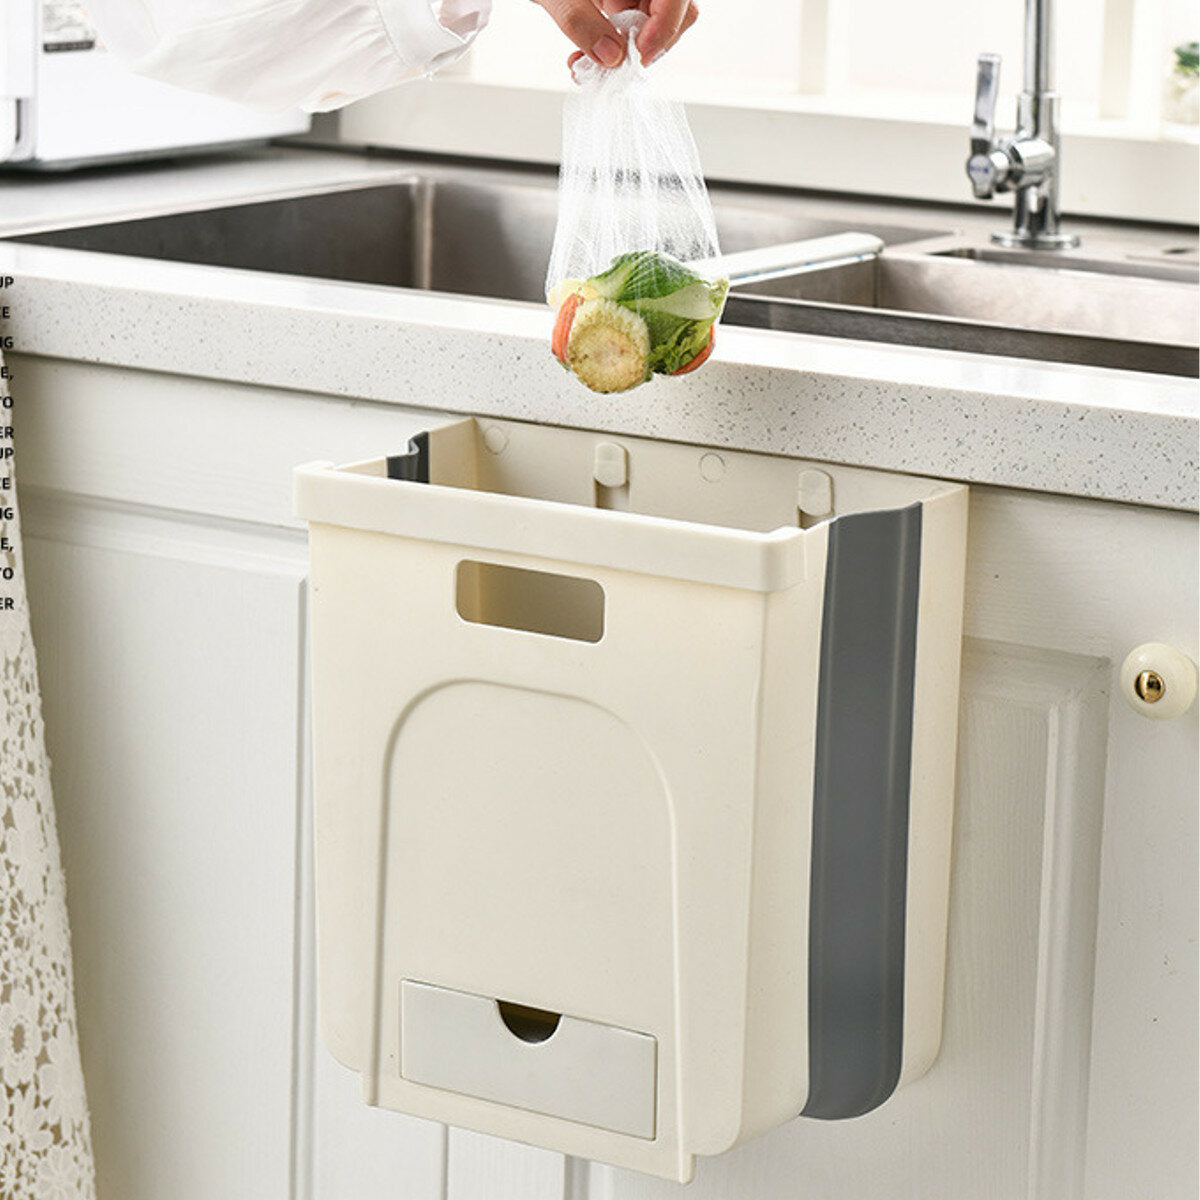 wandmontage opvouwbare afvalbak keukenkast deur prullenbak bin